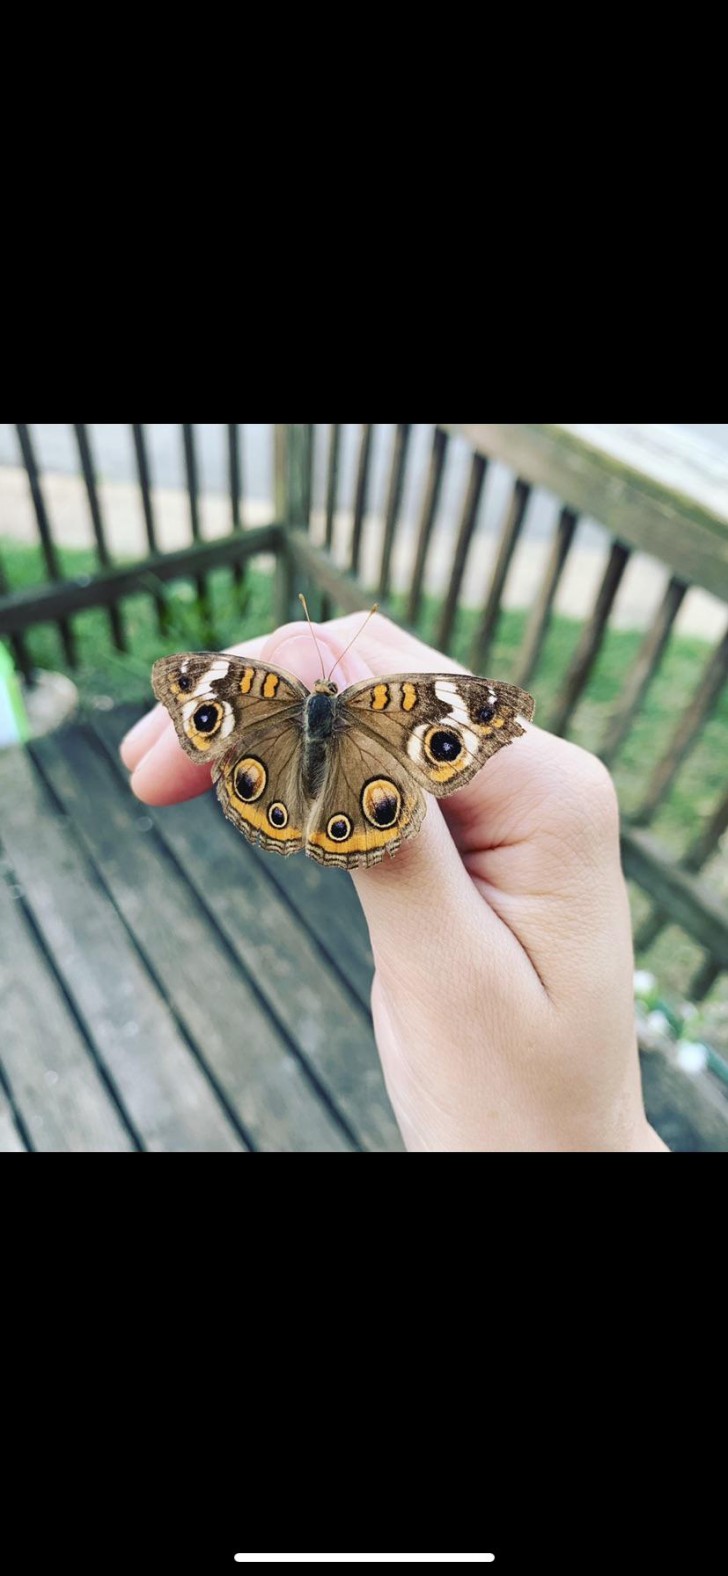 19. Un vrai coup de chance que ce merveilleux papillon ait atterri directement sur ma main !